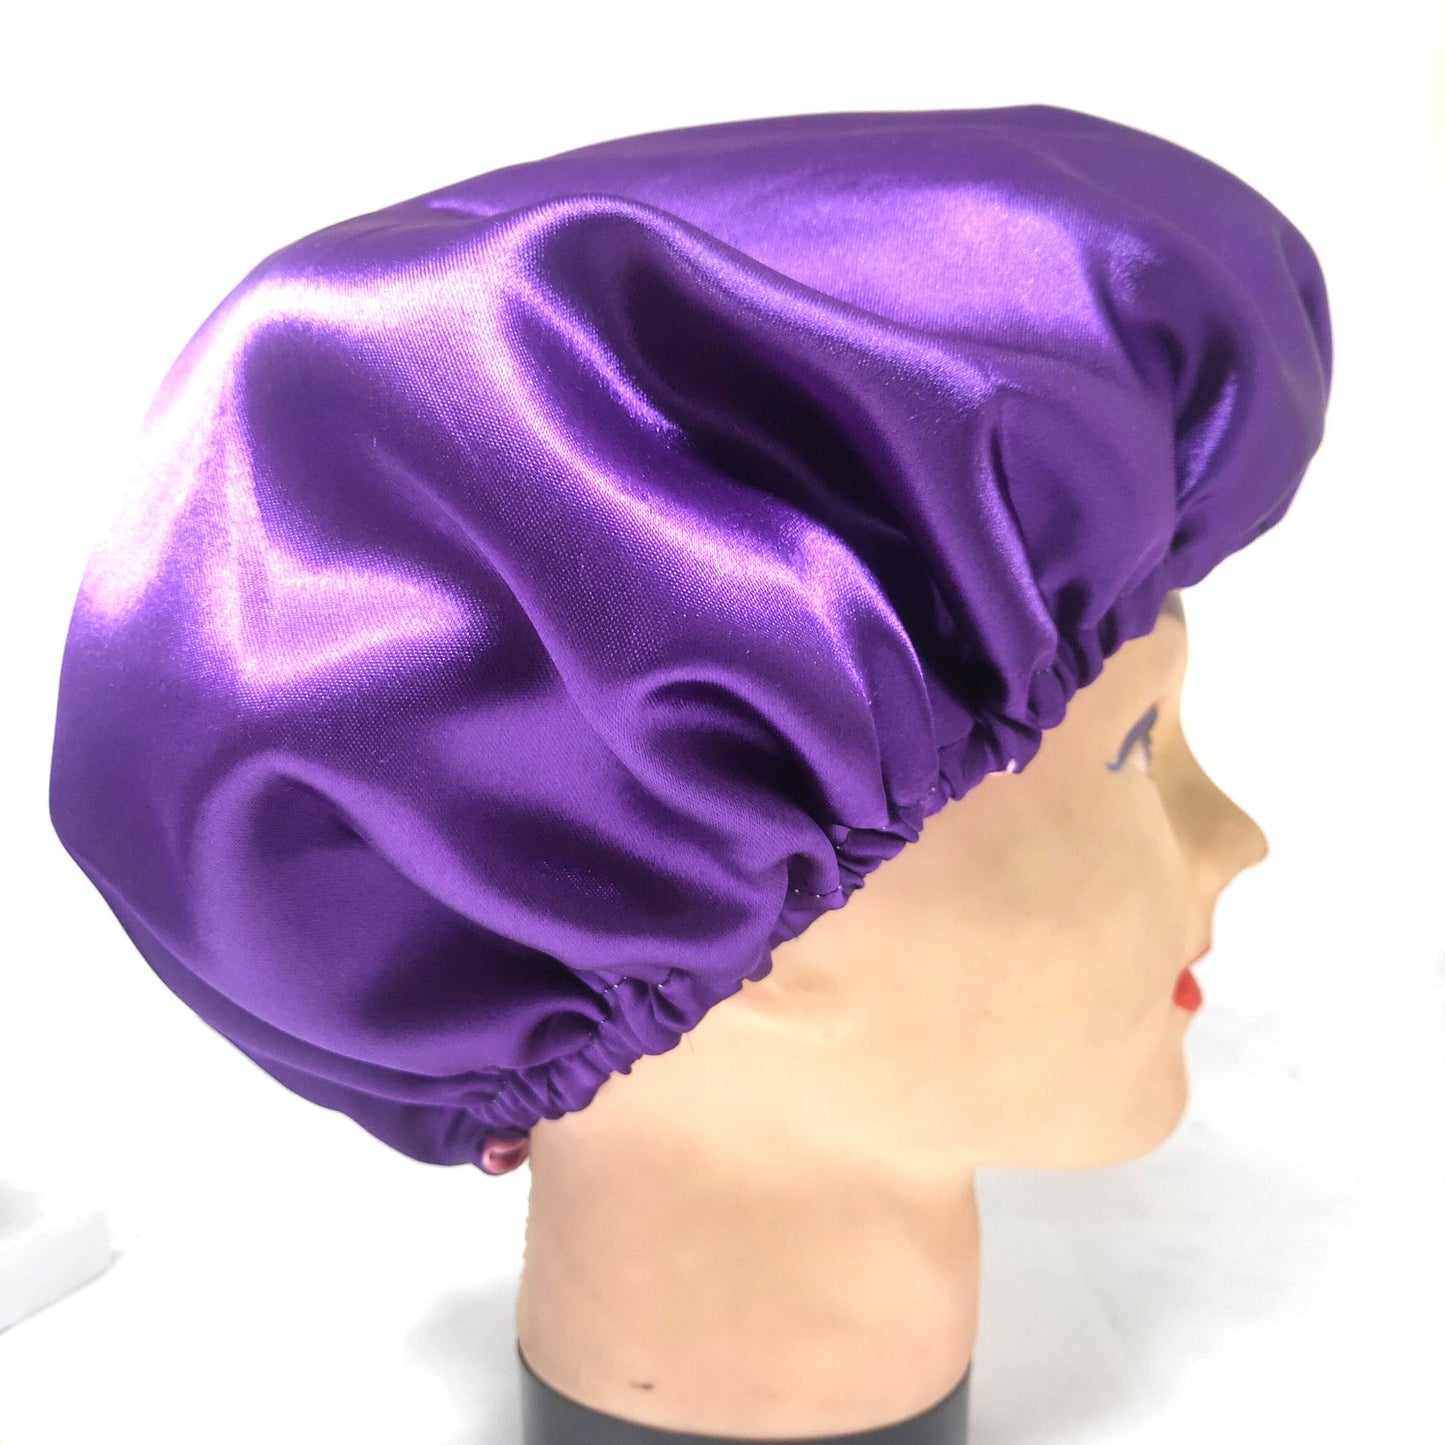 Anokhi Ada Handmade Dual Sided Satin Hair Bonnet Sleep Cap (36-06)